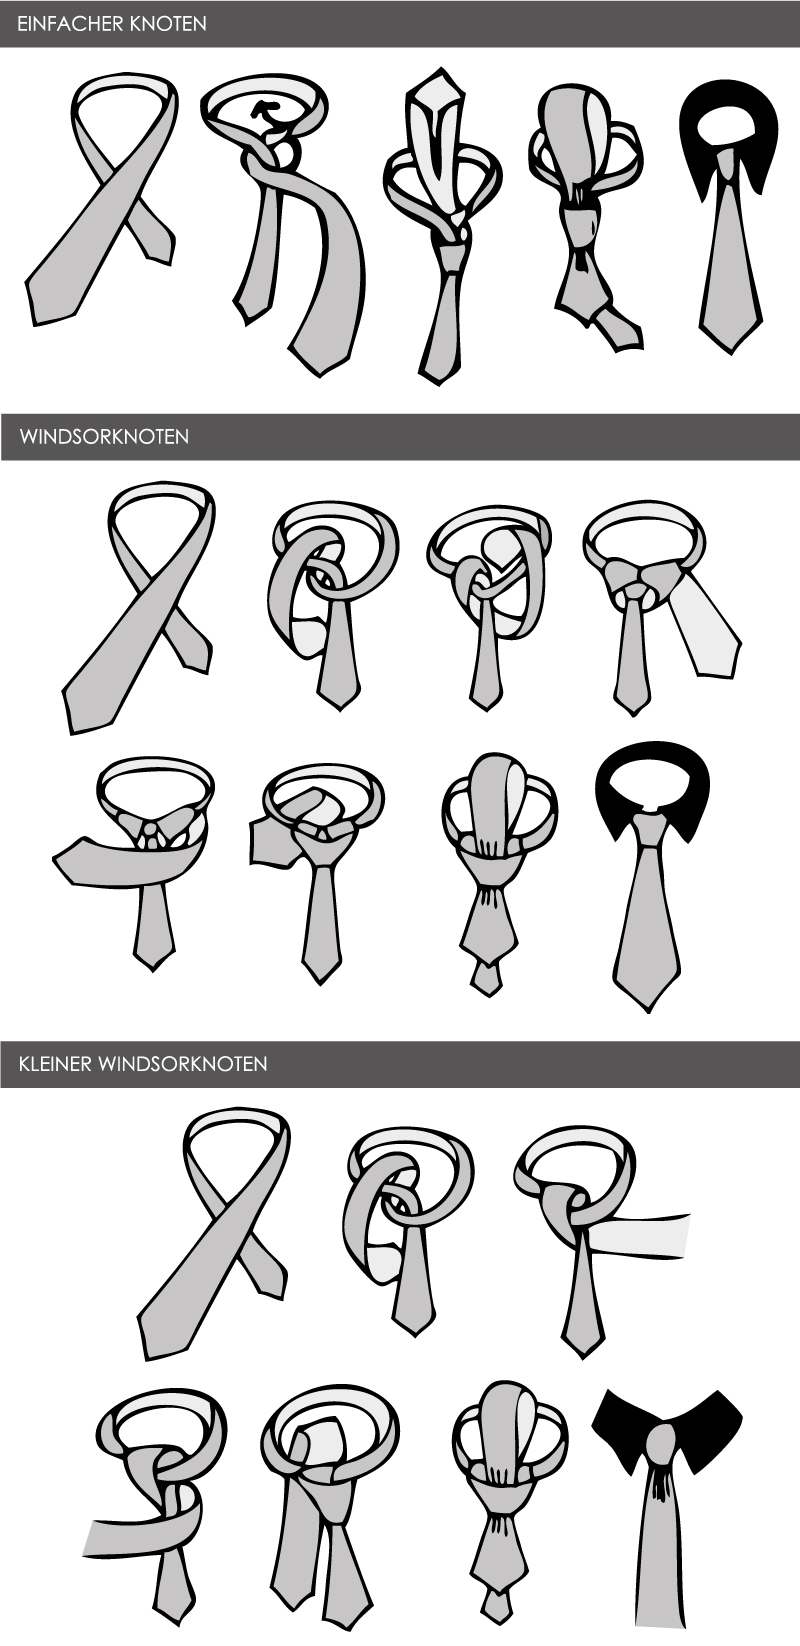 Krawatten Binden Knoten